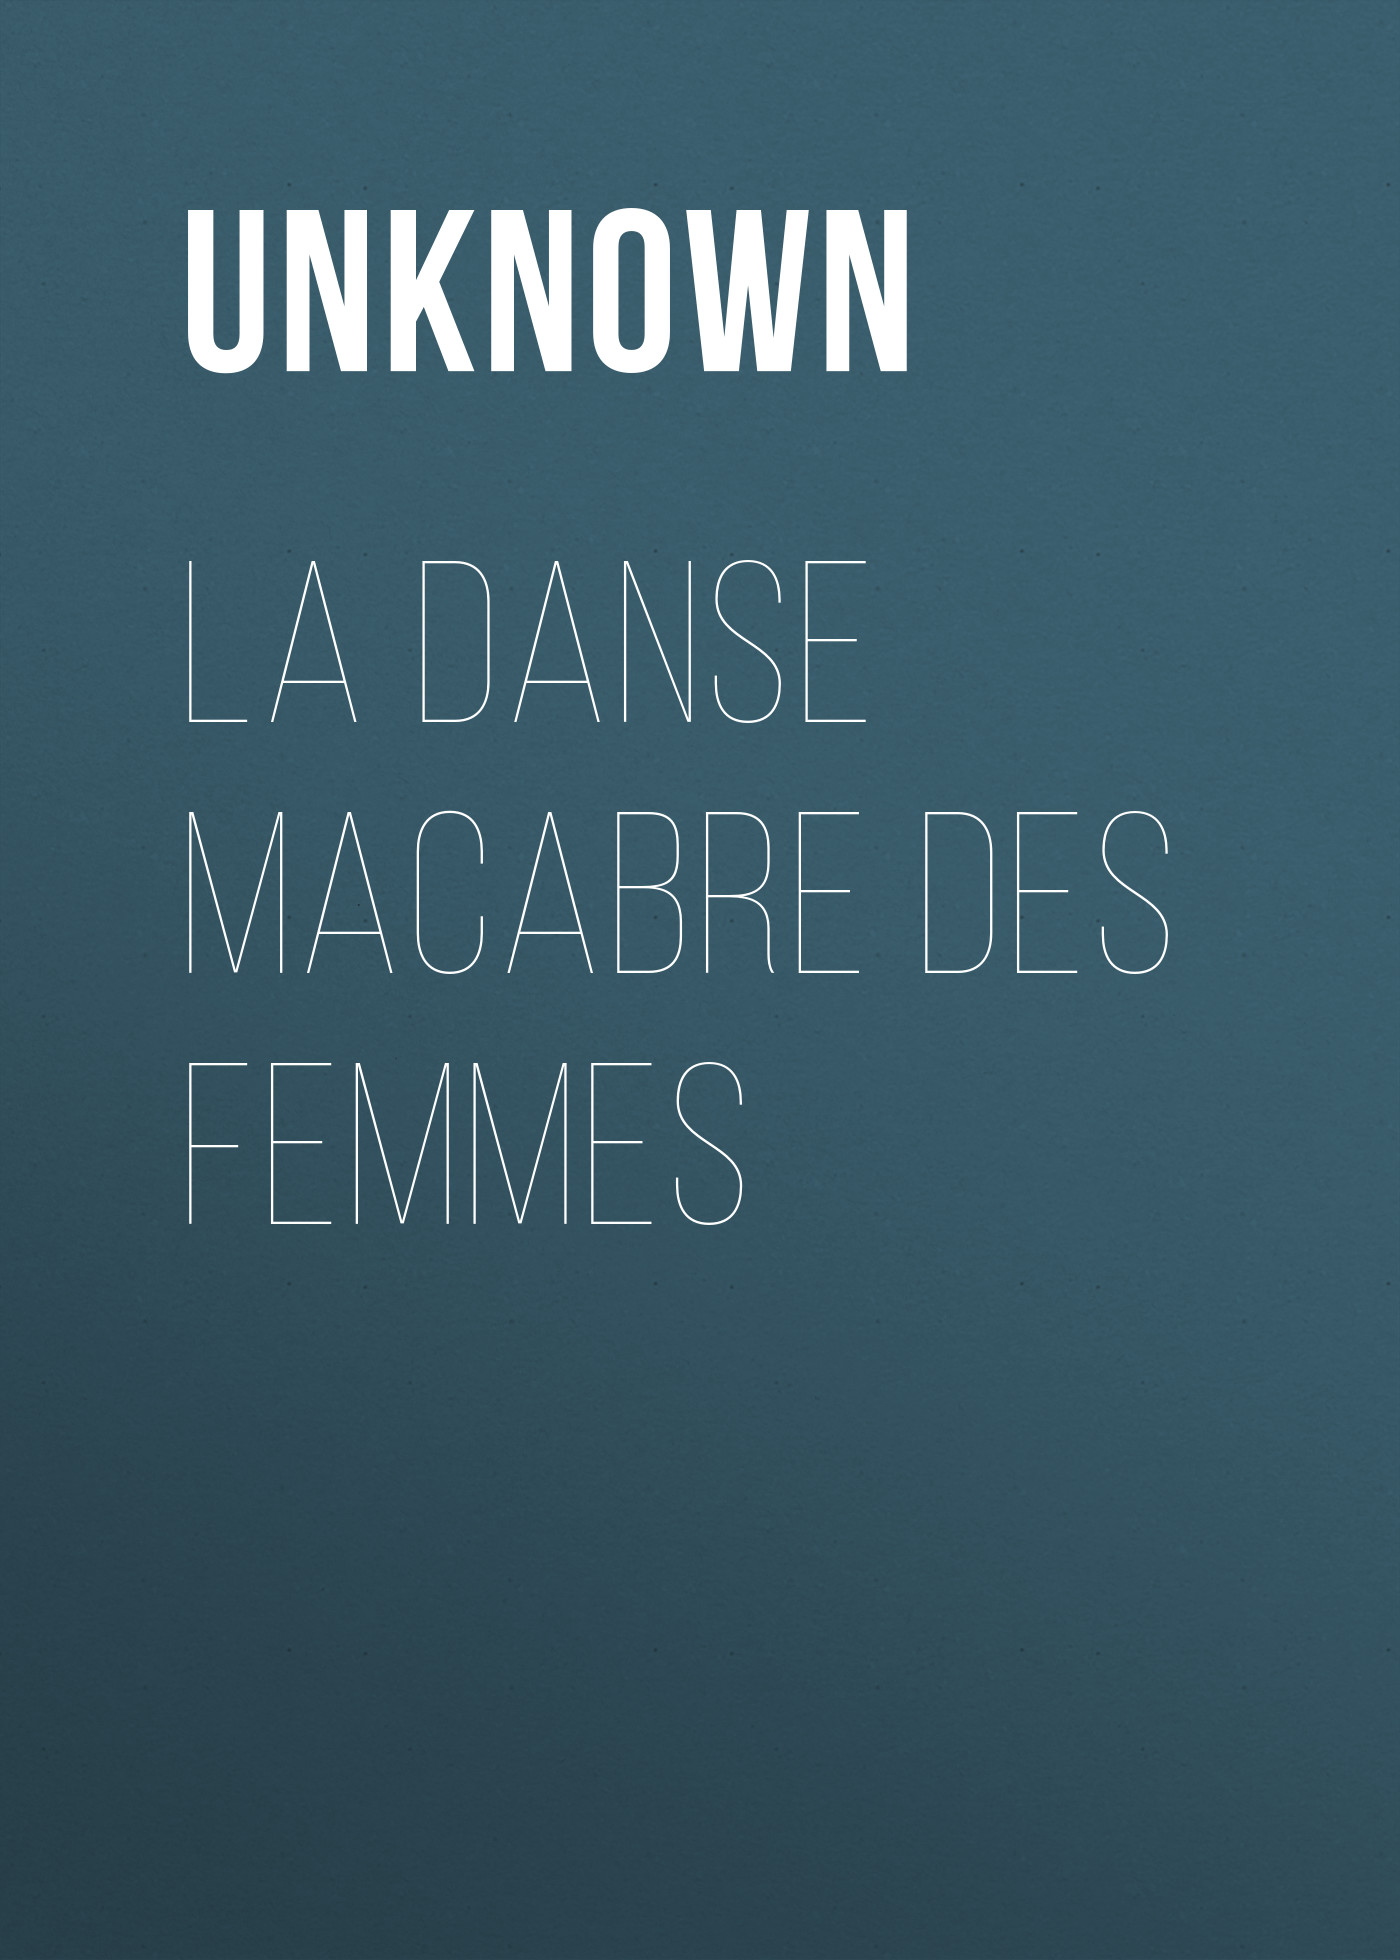 Книга La danse macabre des femmes из серии , созданная Unknown Unknown, может относится к жанру Зарубежные стихи, Поэзия, Зарубежная старинная литература, Зарубежная классика. Стоимость электронной книги La danse macabre des femmes с идентификатором 35496351 составляет 0 руб.